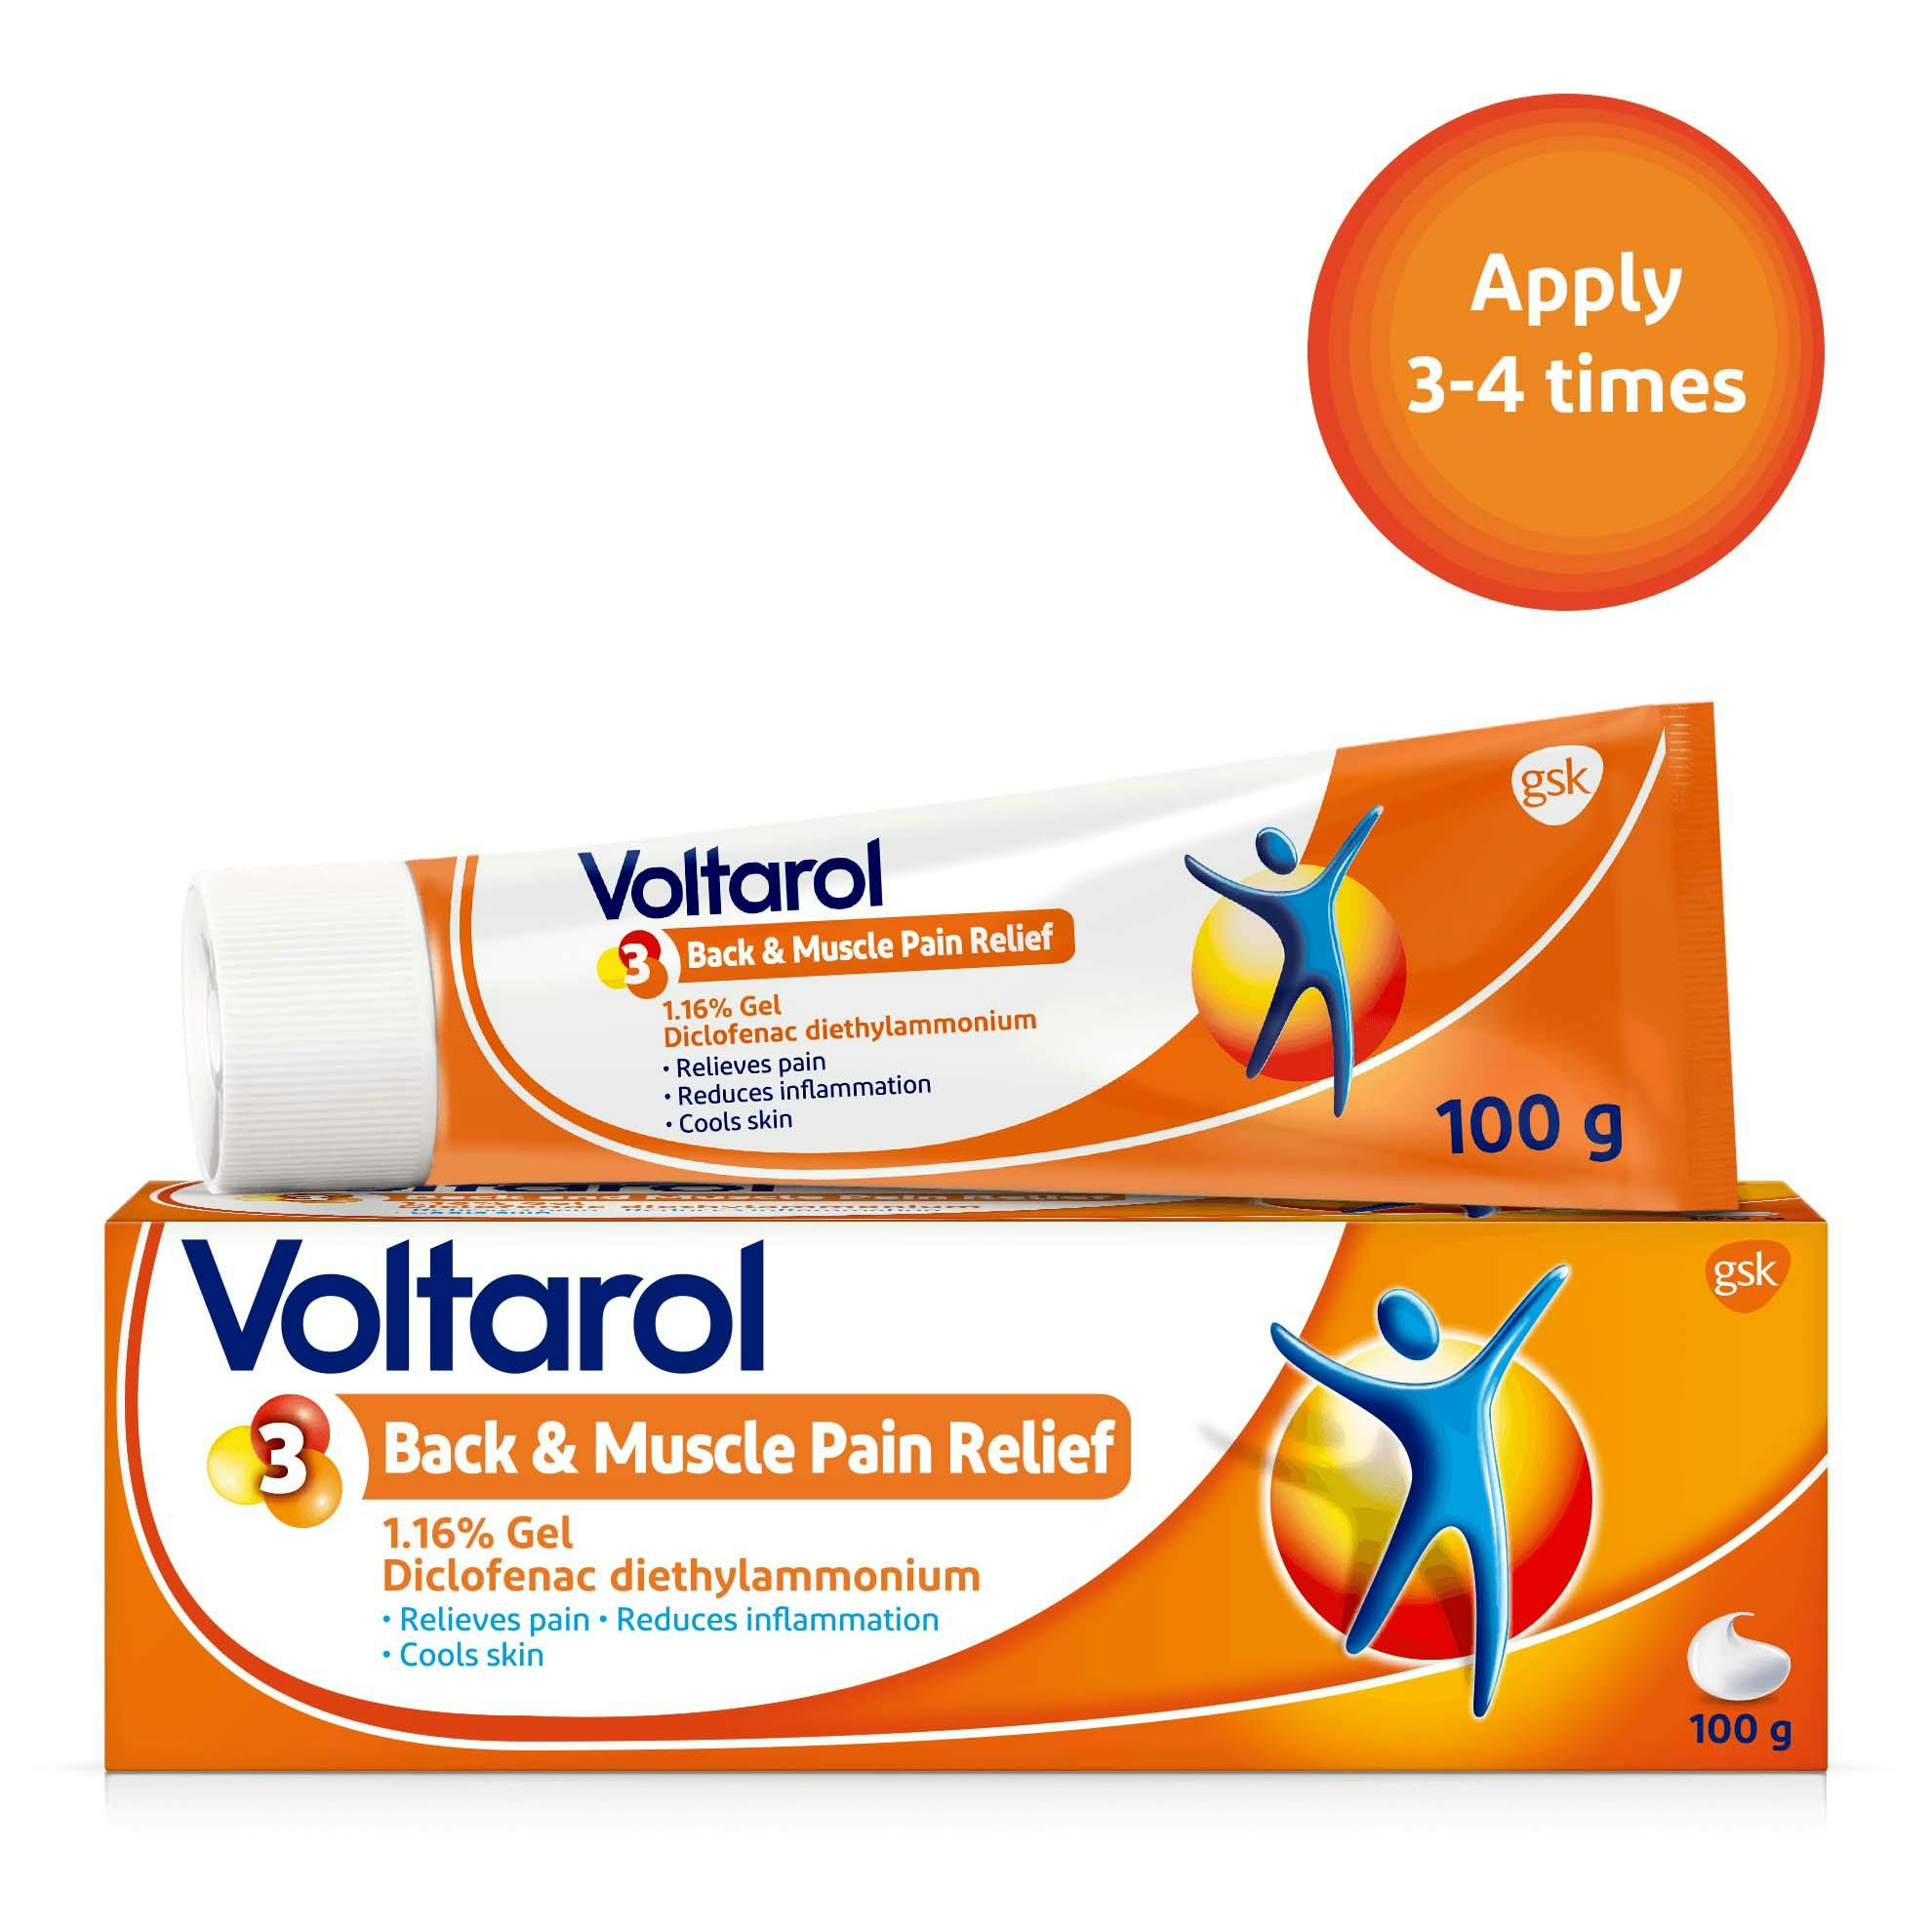 Voltarol 2.32 percent Diclofenac Gel for neck pain relief product box